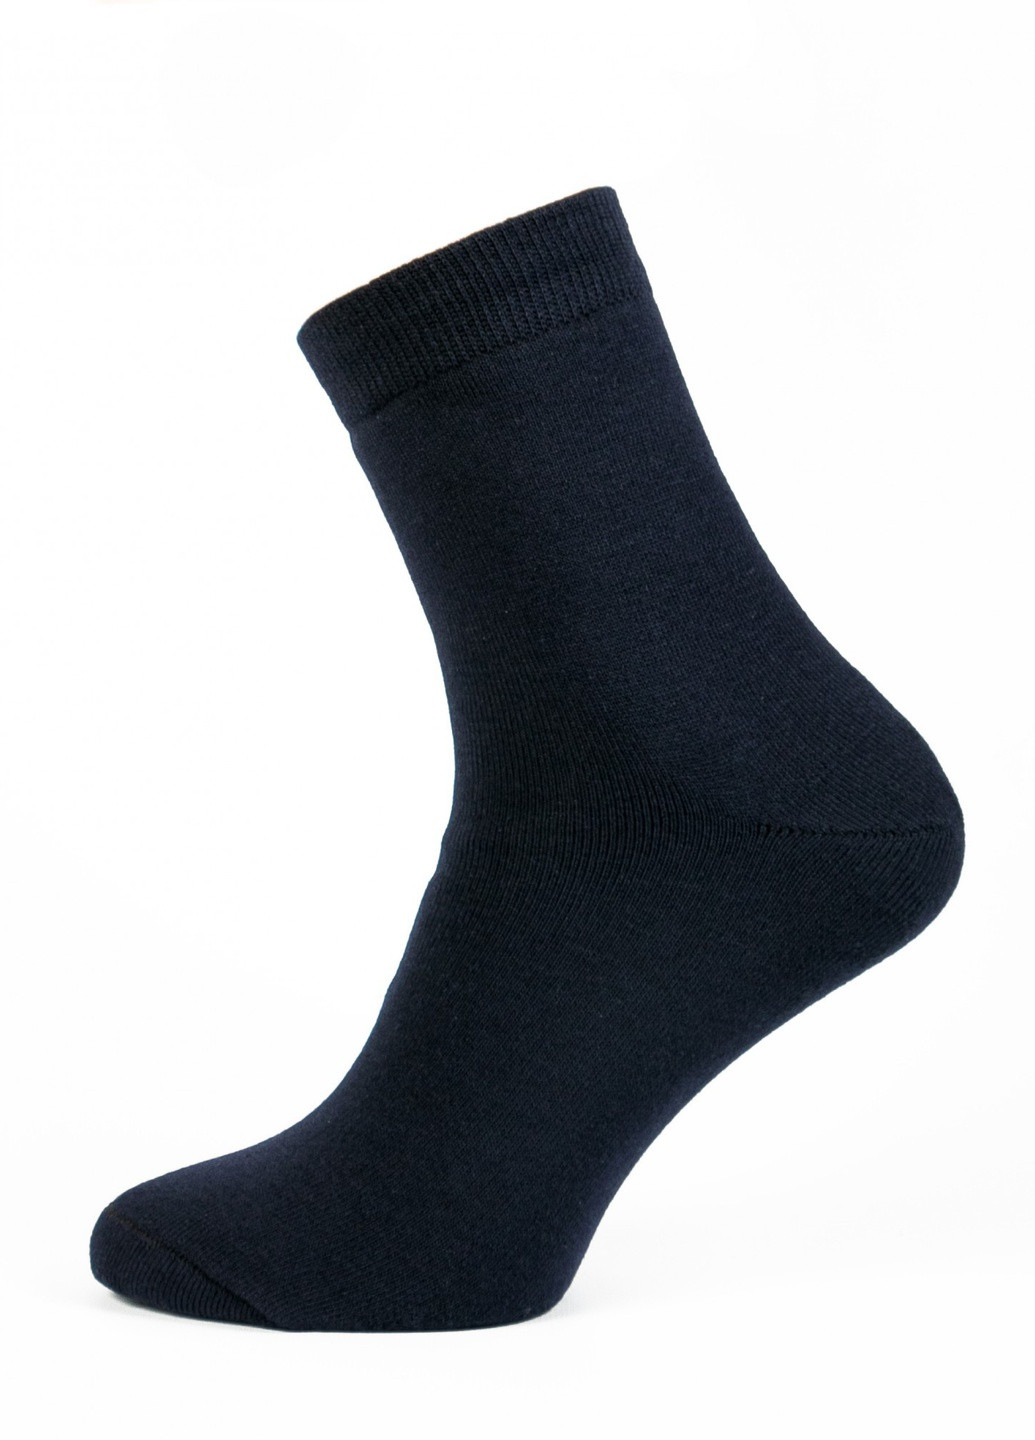 Шкарпетки чоловічі ТМ "Нова пара" 428 середня висота НОВА ПАРА з ущільненім носком однотонні чорні повсякденні